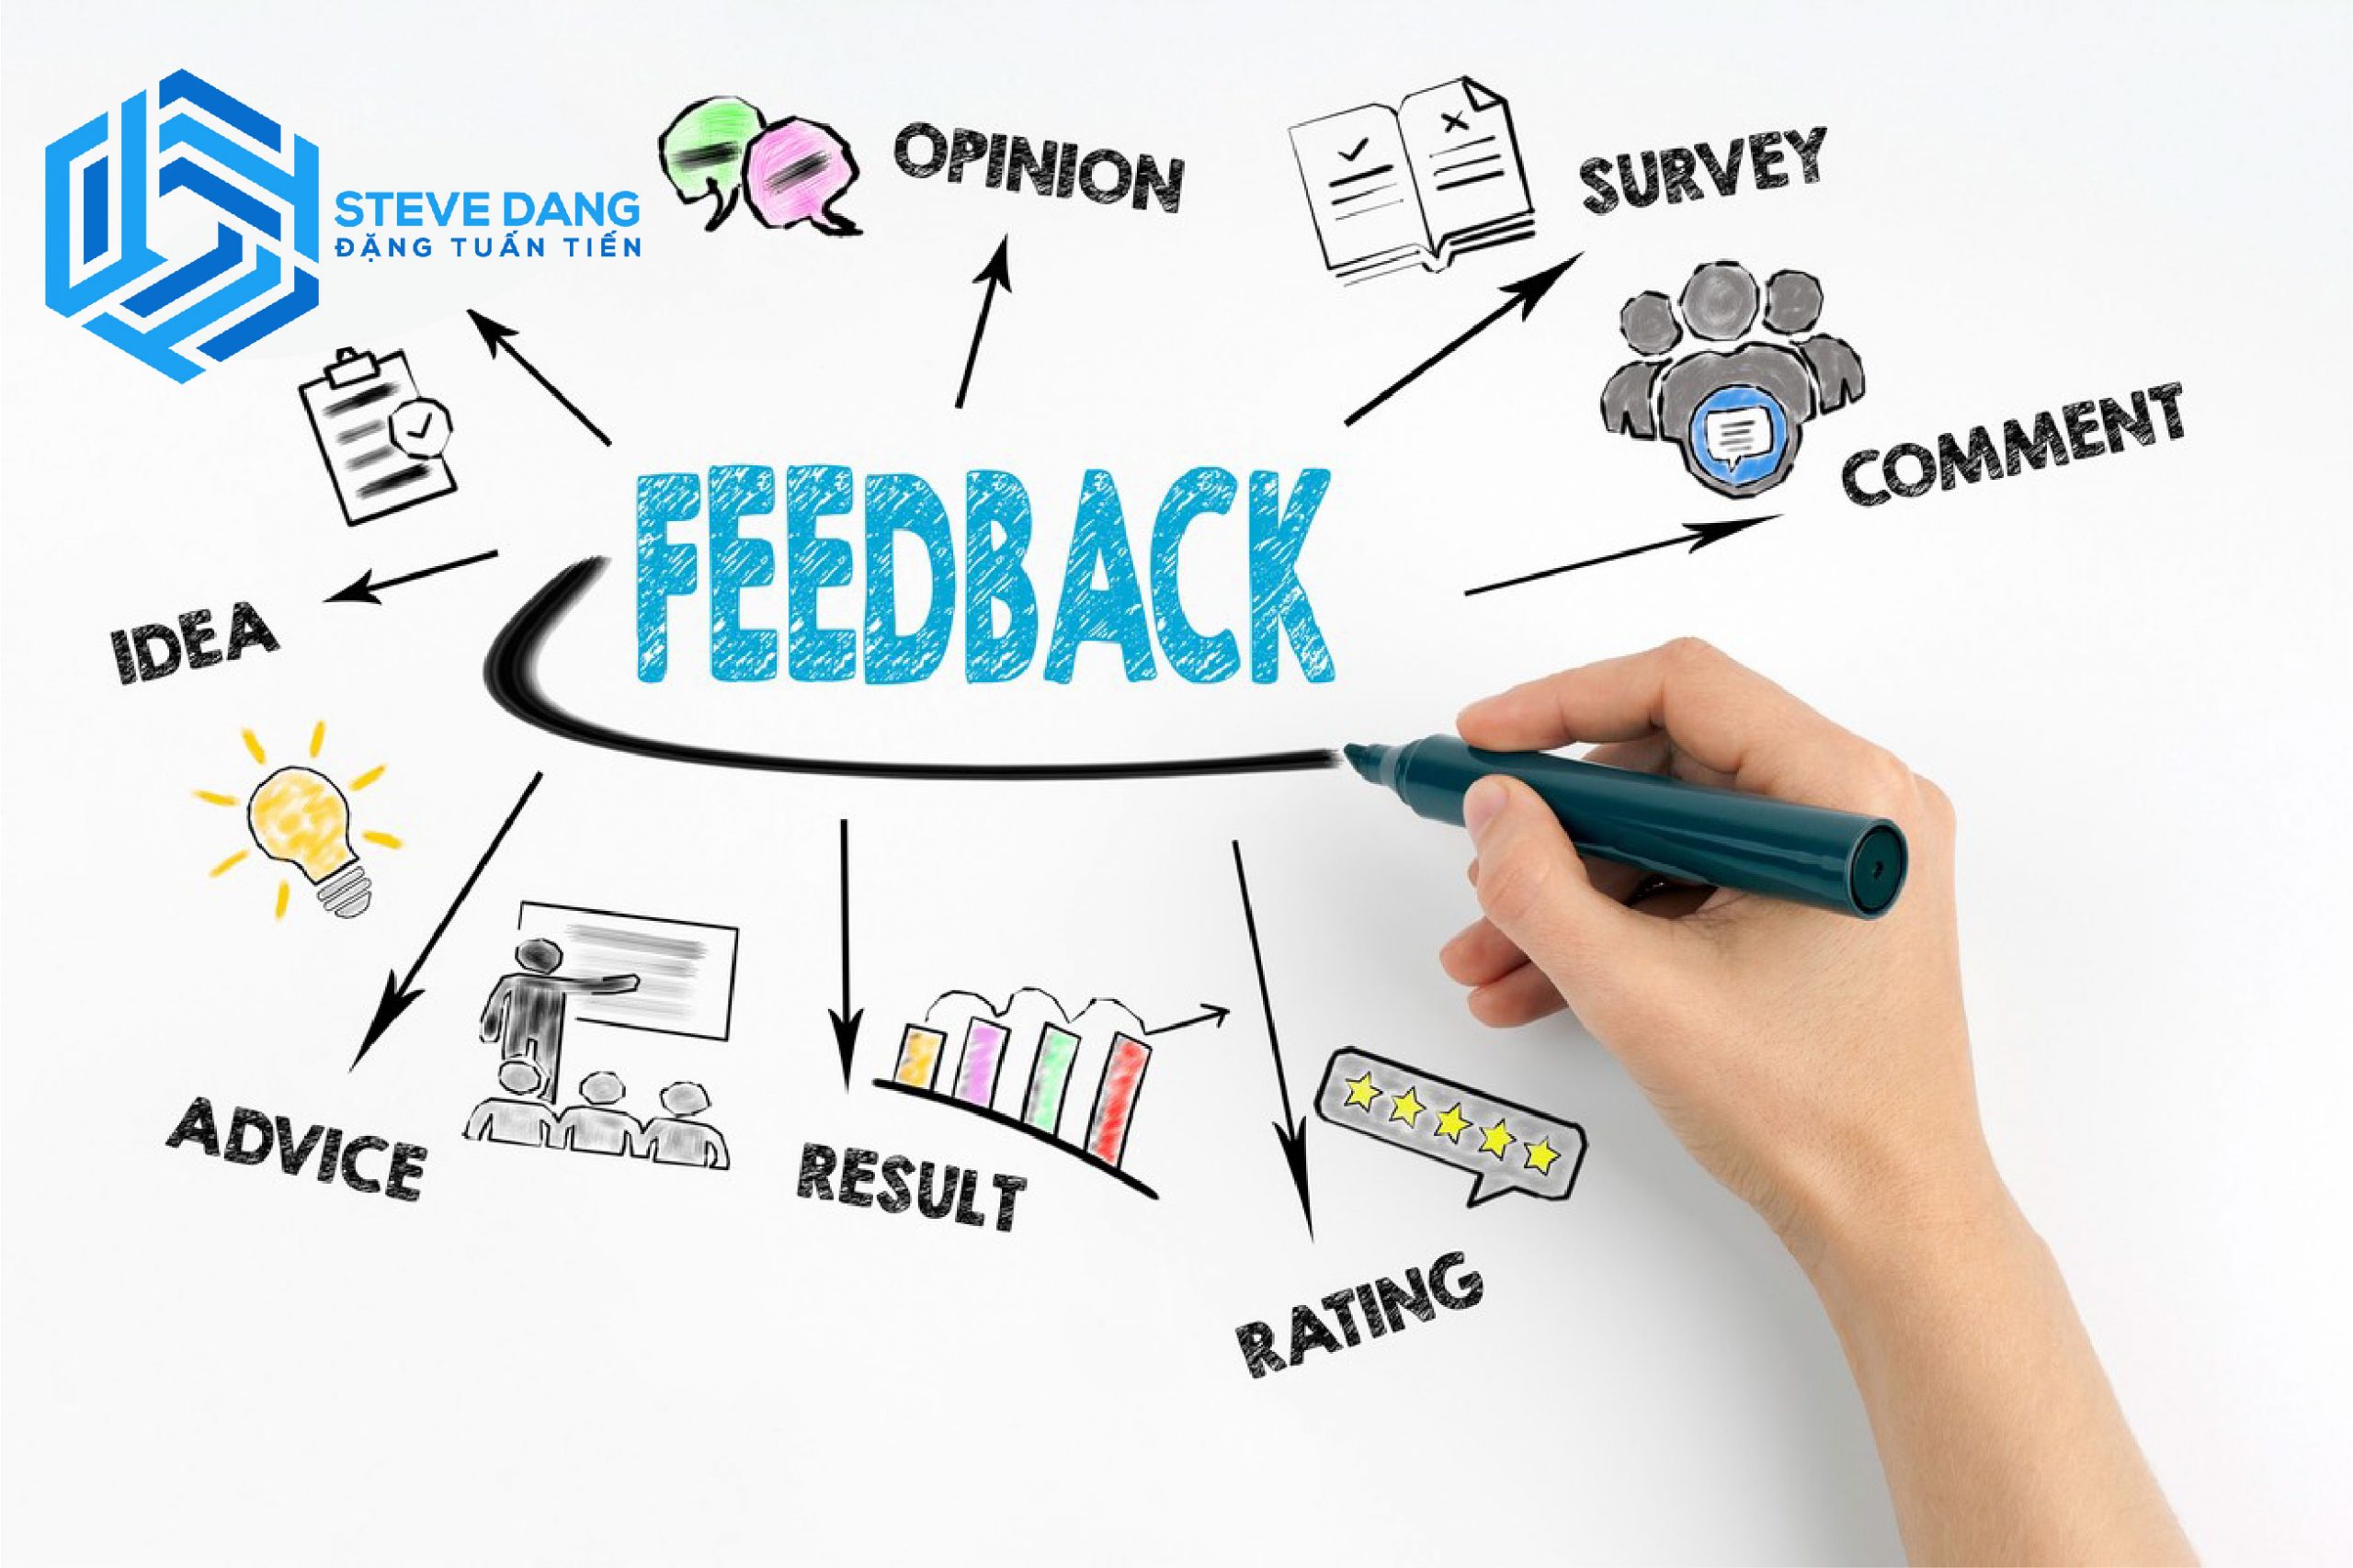 Cách bán hàng online hiệu quả cho người mới bắt đầu chính là đăng feedback từ khách hàng